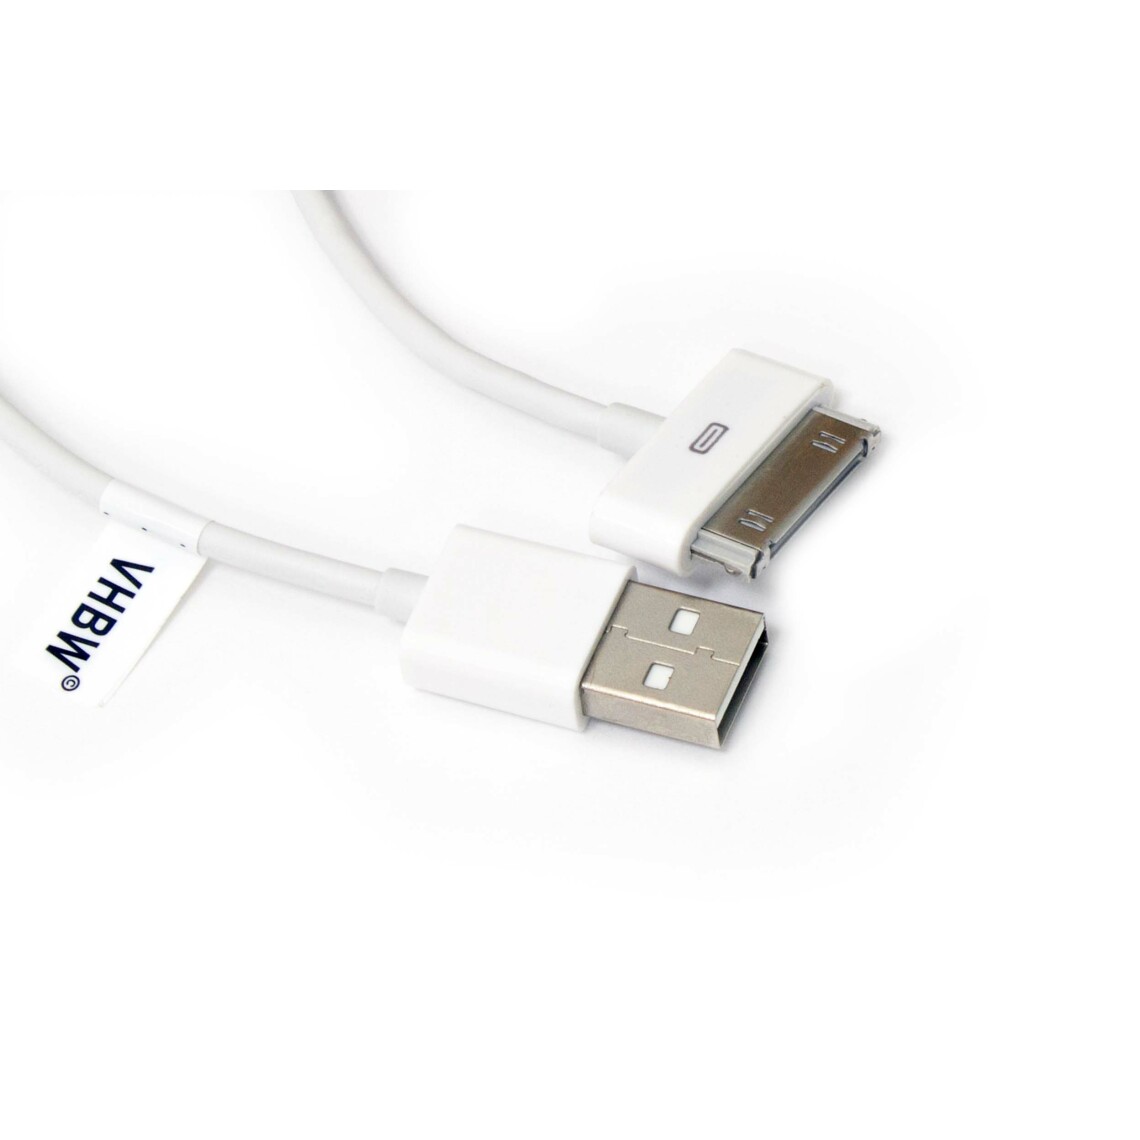 Vhbw - vhbw câble de données USB (type A sur iPod) compatible avec Apple iPod nano 5 Gen. - A1320 lecteur MP3 - blanc - Alimentation modulaire